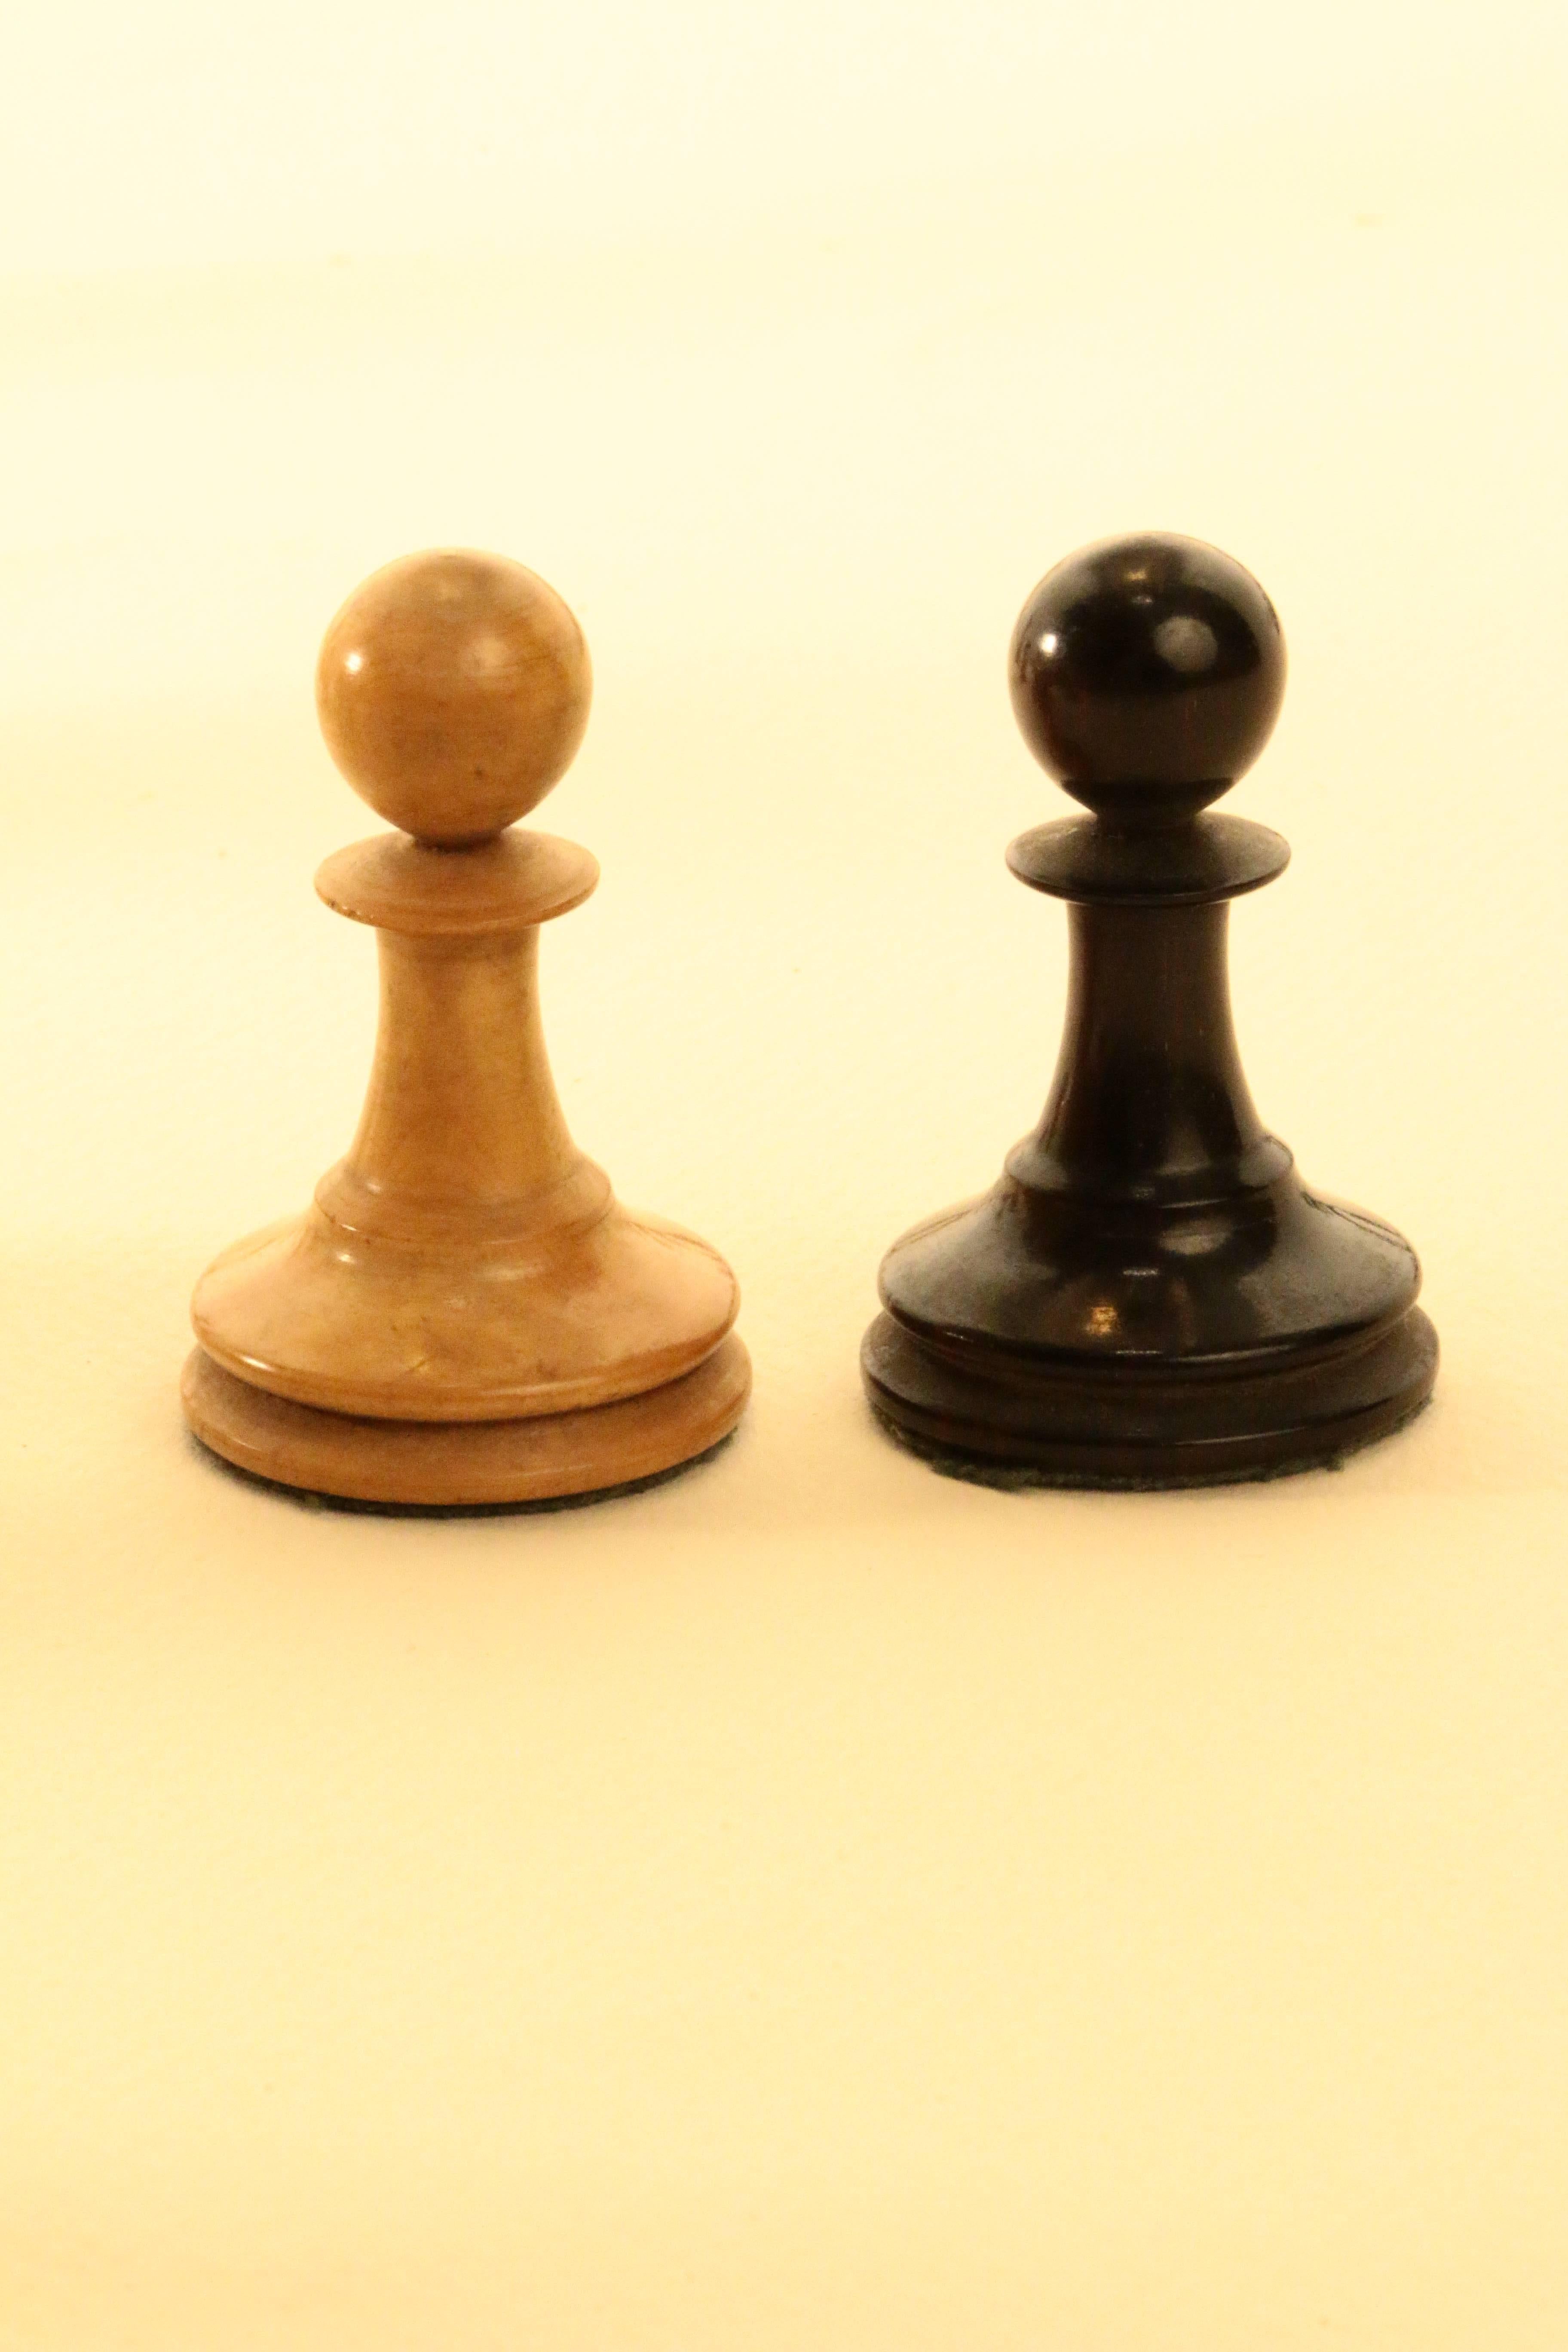 jaques chess sets antique